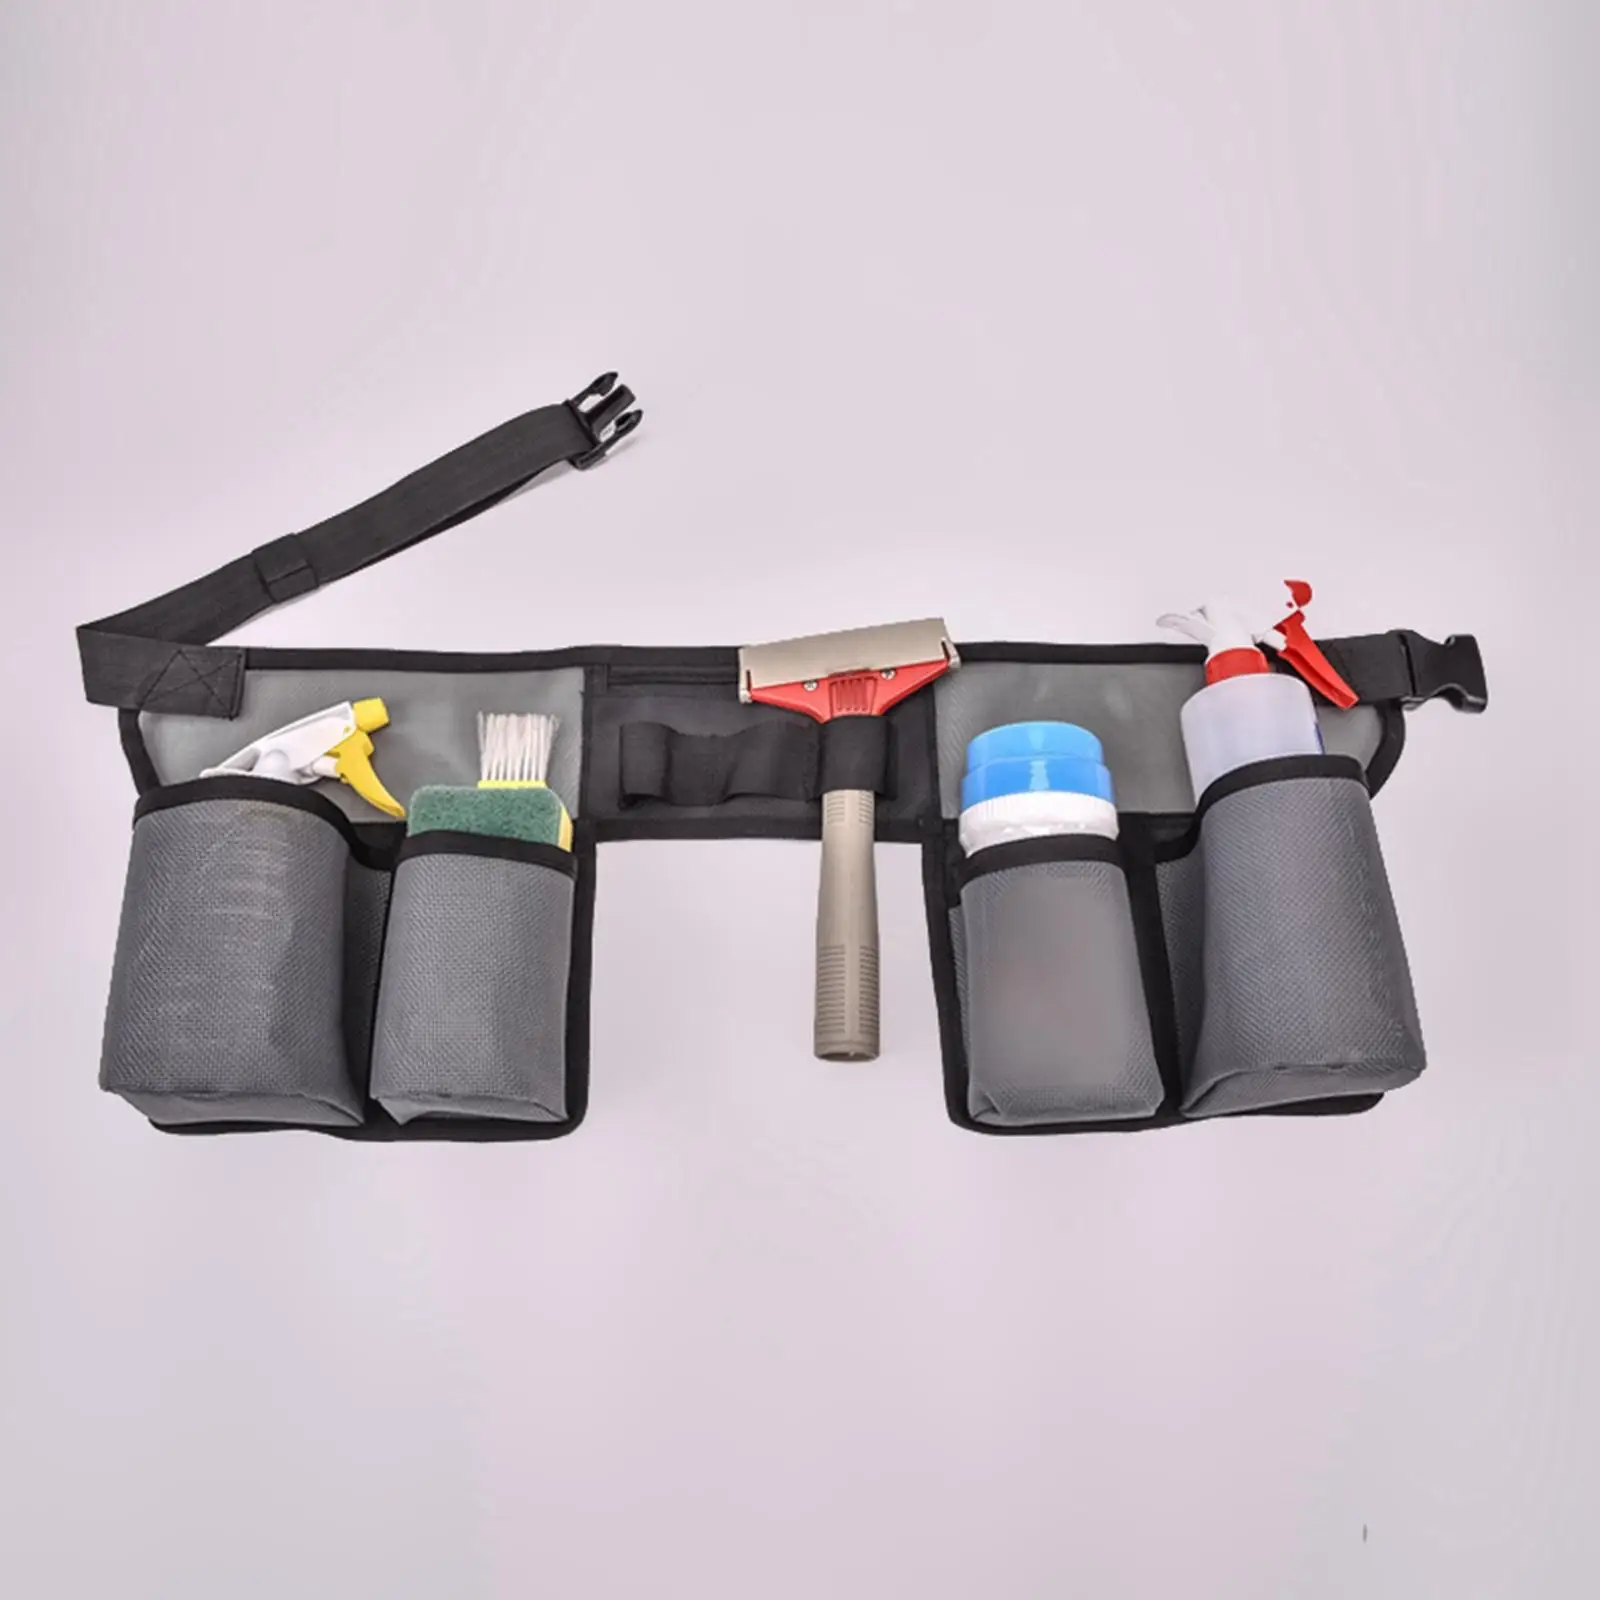 Tool Waist Pouch with Multi Pockets Waterproof Adjustable Tool Bag for Indoor Home Outdoor Men Women Garden